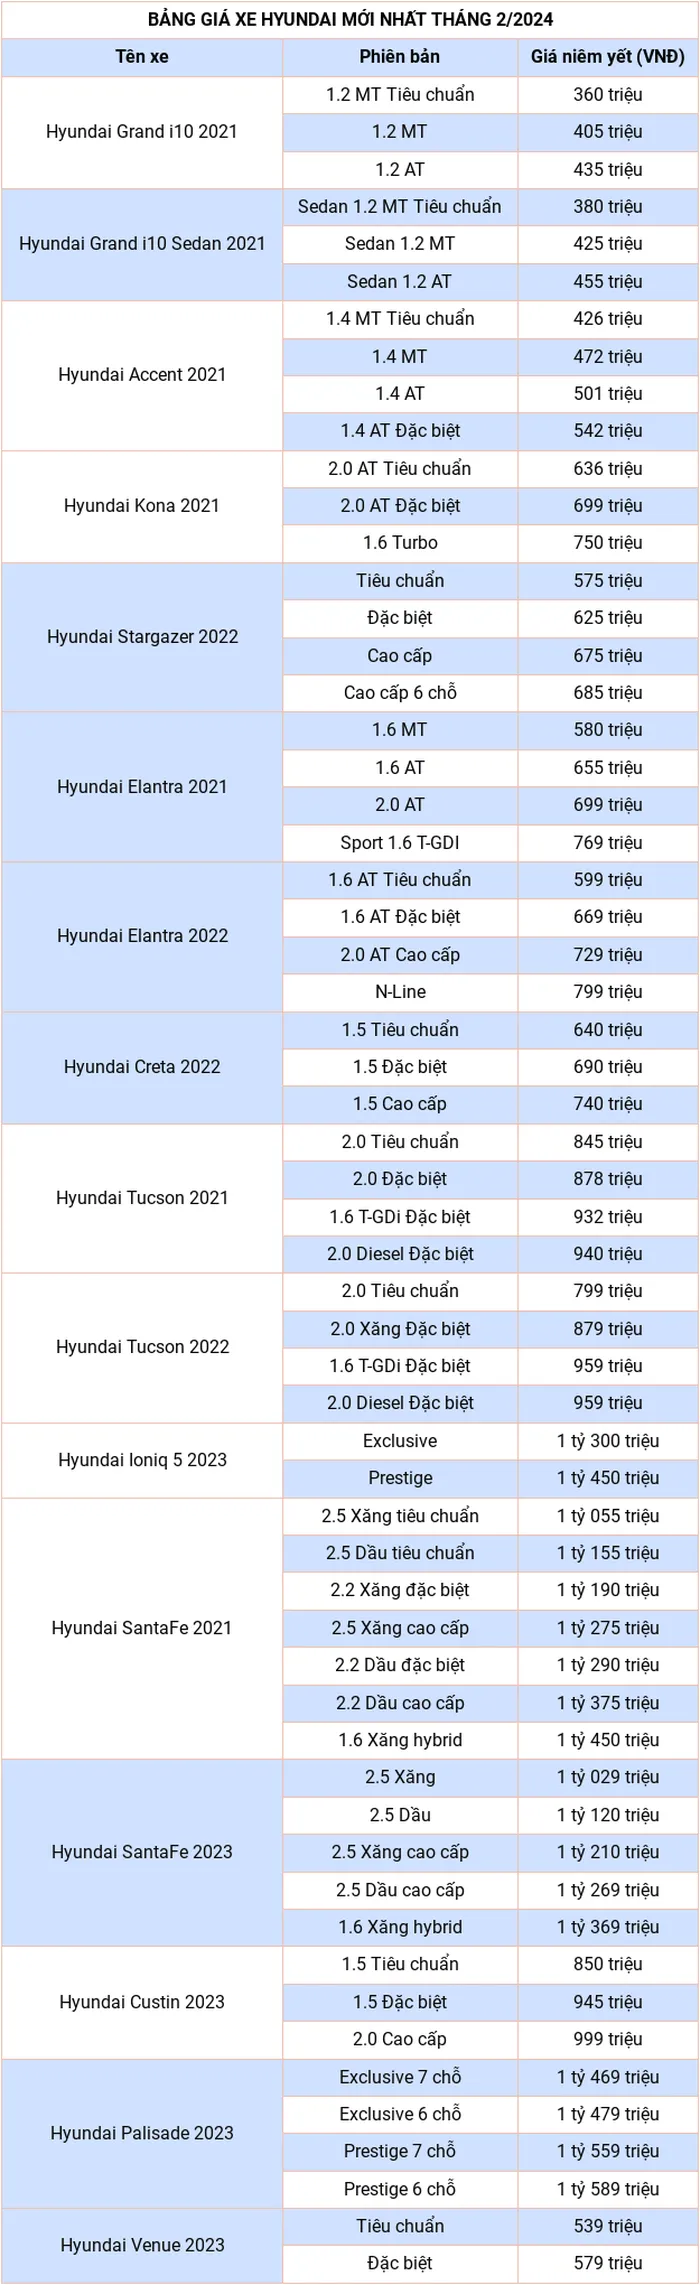 Cập nhật bảng giá xe hãng Hyundai mới nhất tháng 2/2024